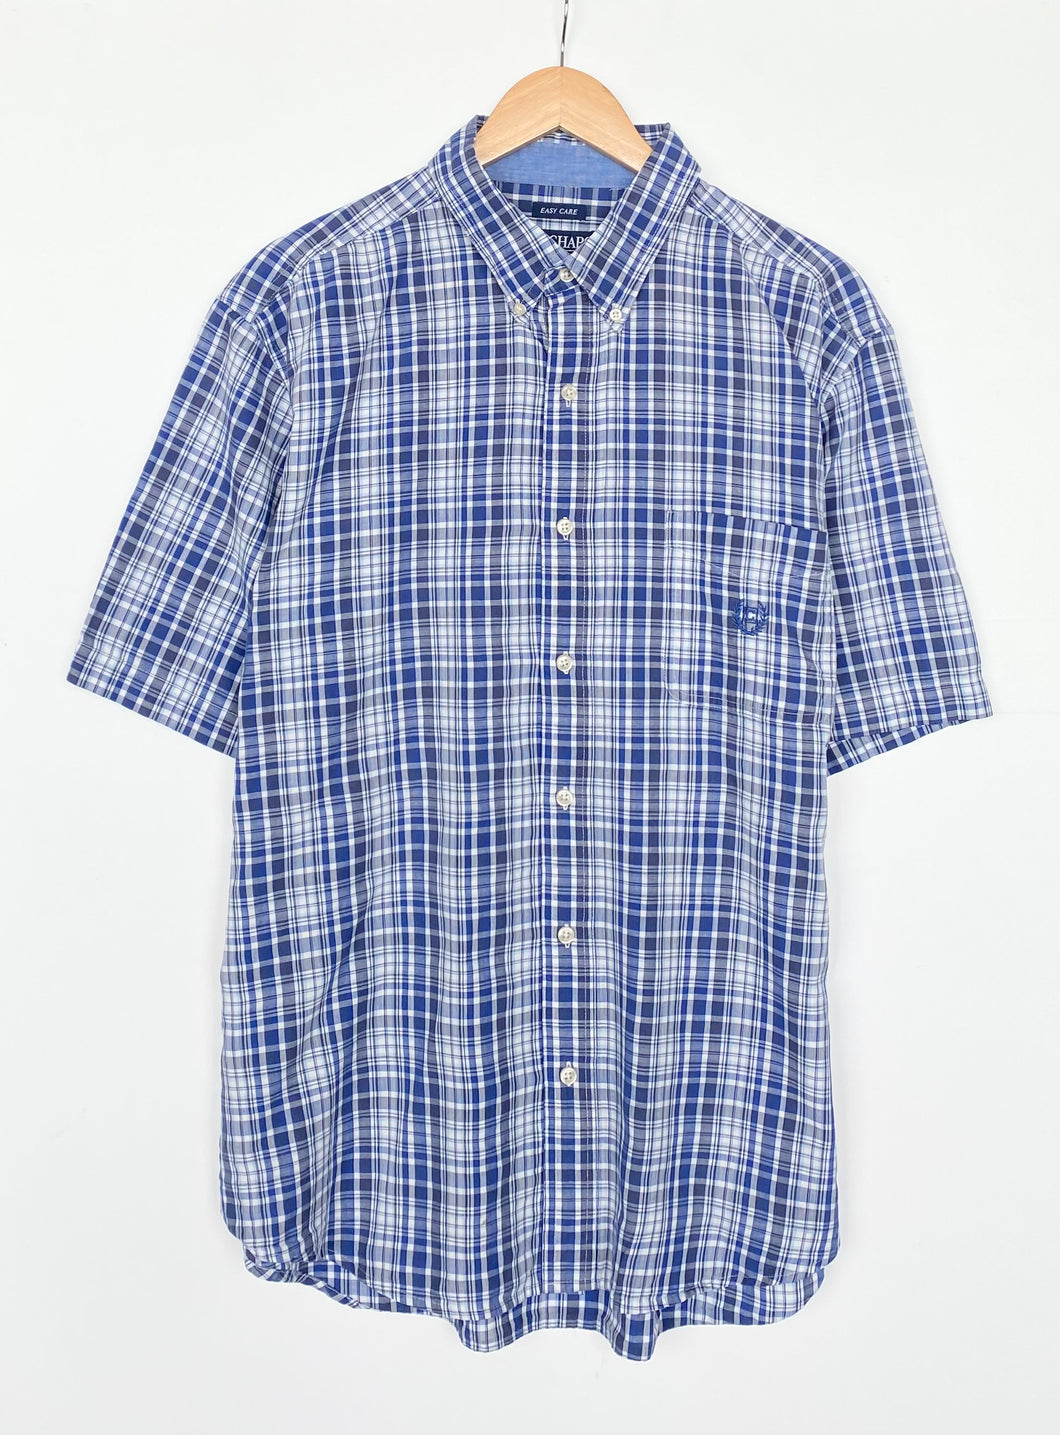 Chaps Ralph Lauren shirt (XL)